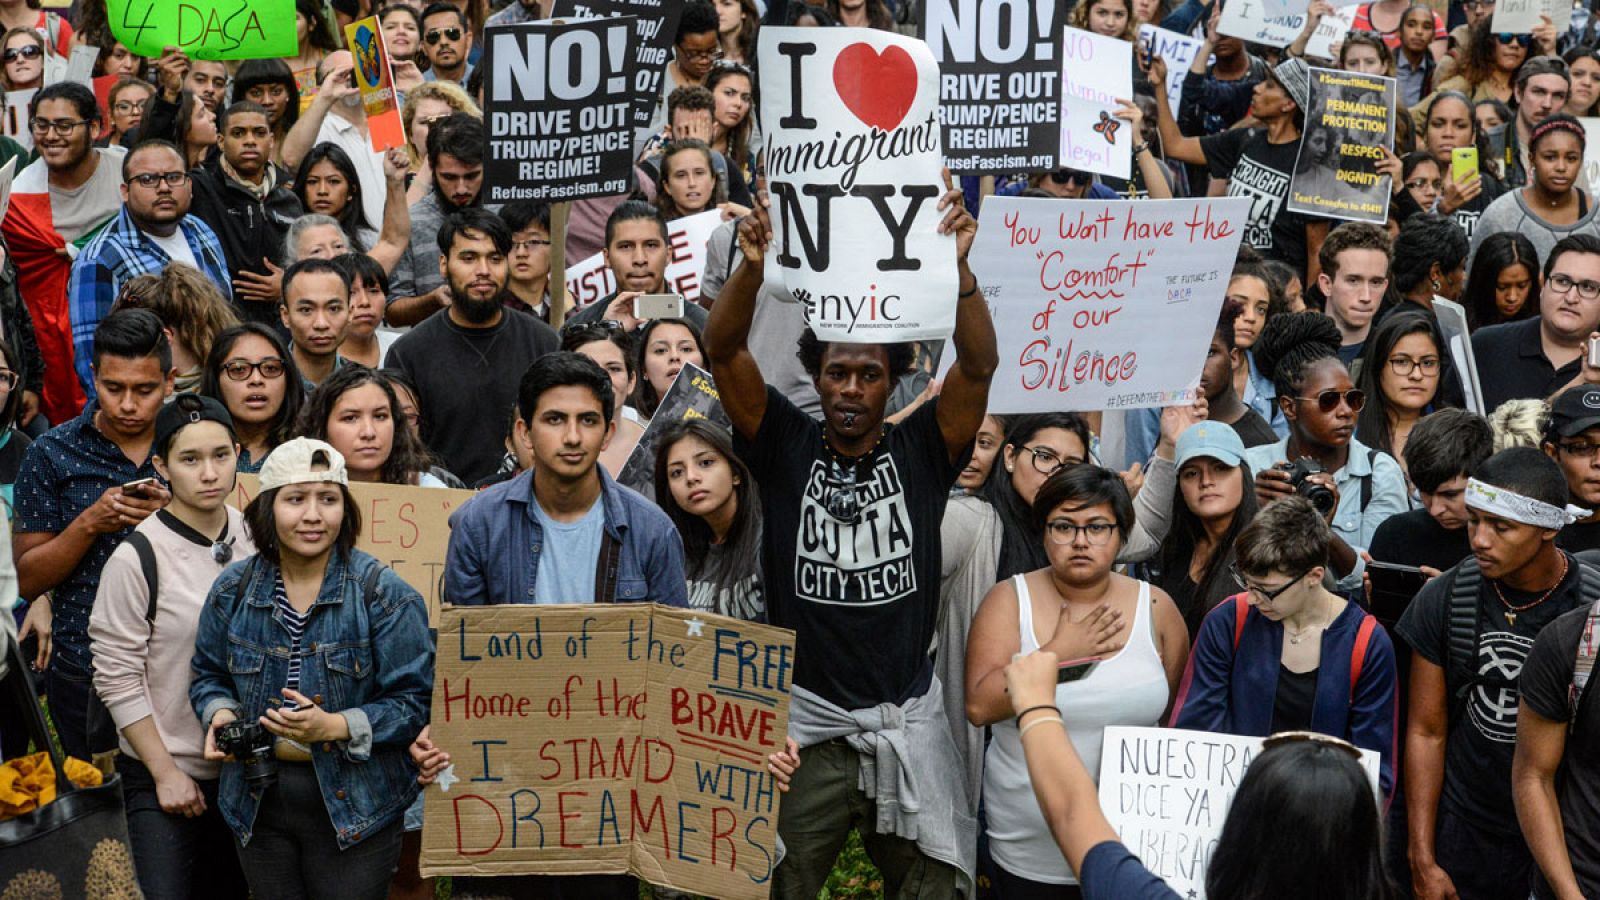 Imagen de la manifestación celebrada el sábado 9 de septiembre de 2017 en Nueva York contra la rescisión del programa DACA anunciada por el Gobierno de EE.UU.